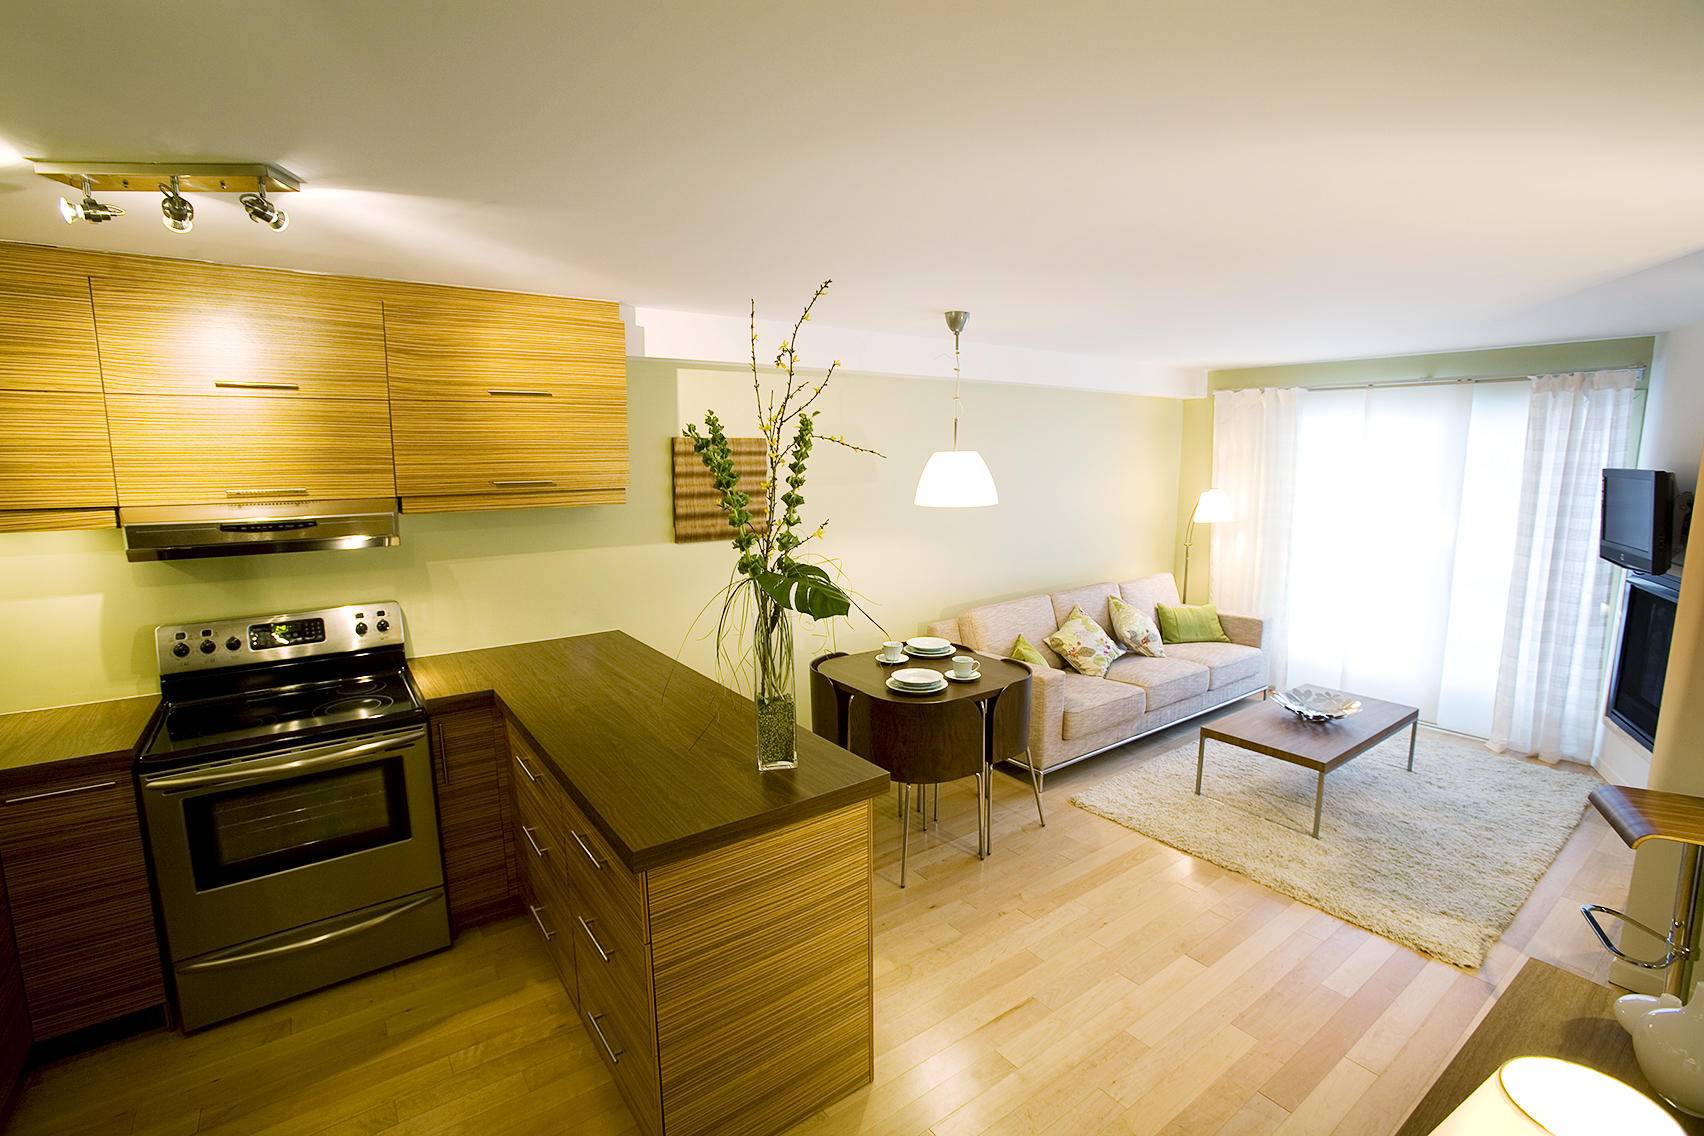 Кухня гостиная 22 кв м дизайн – дизайн кухни-гостиной площадью 19-20 кв. м (73 фото): планировка совмещенных помещений